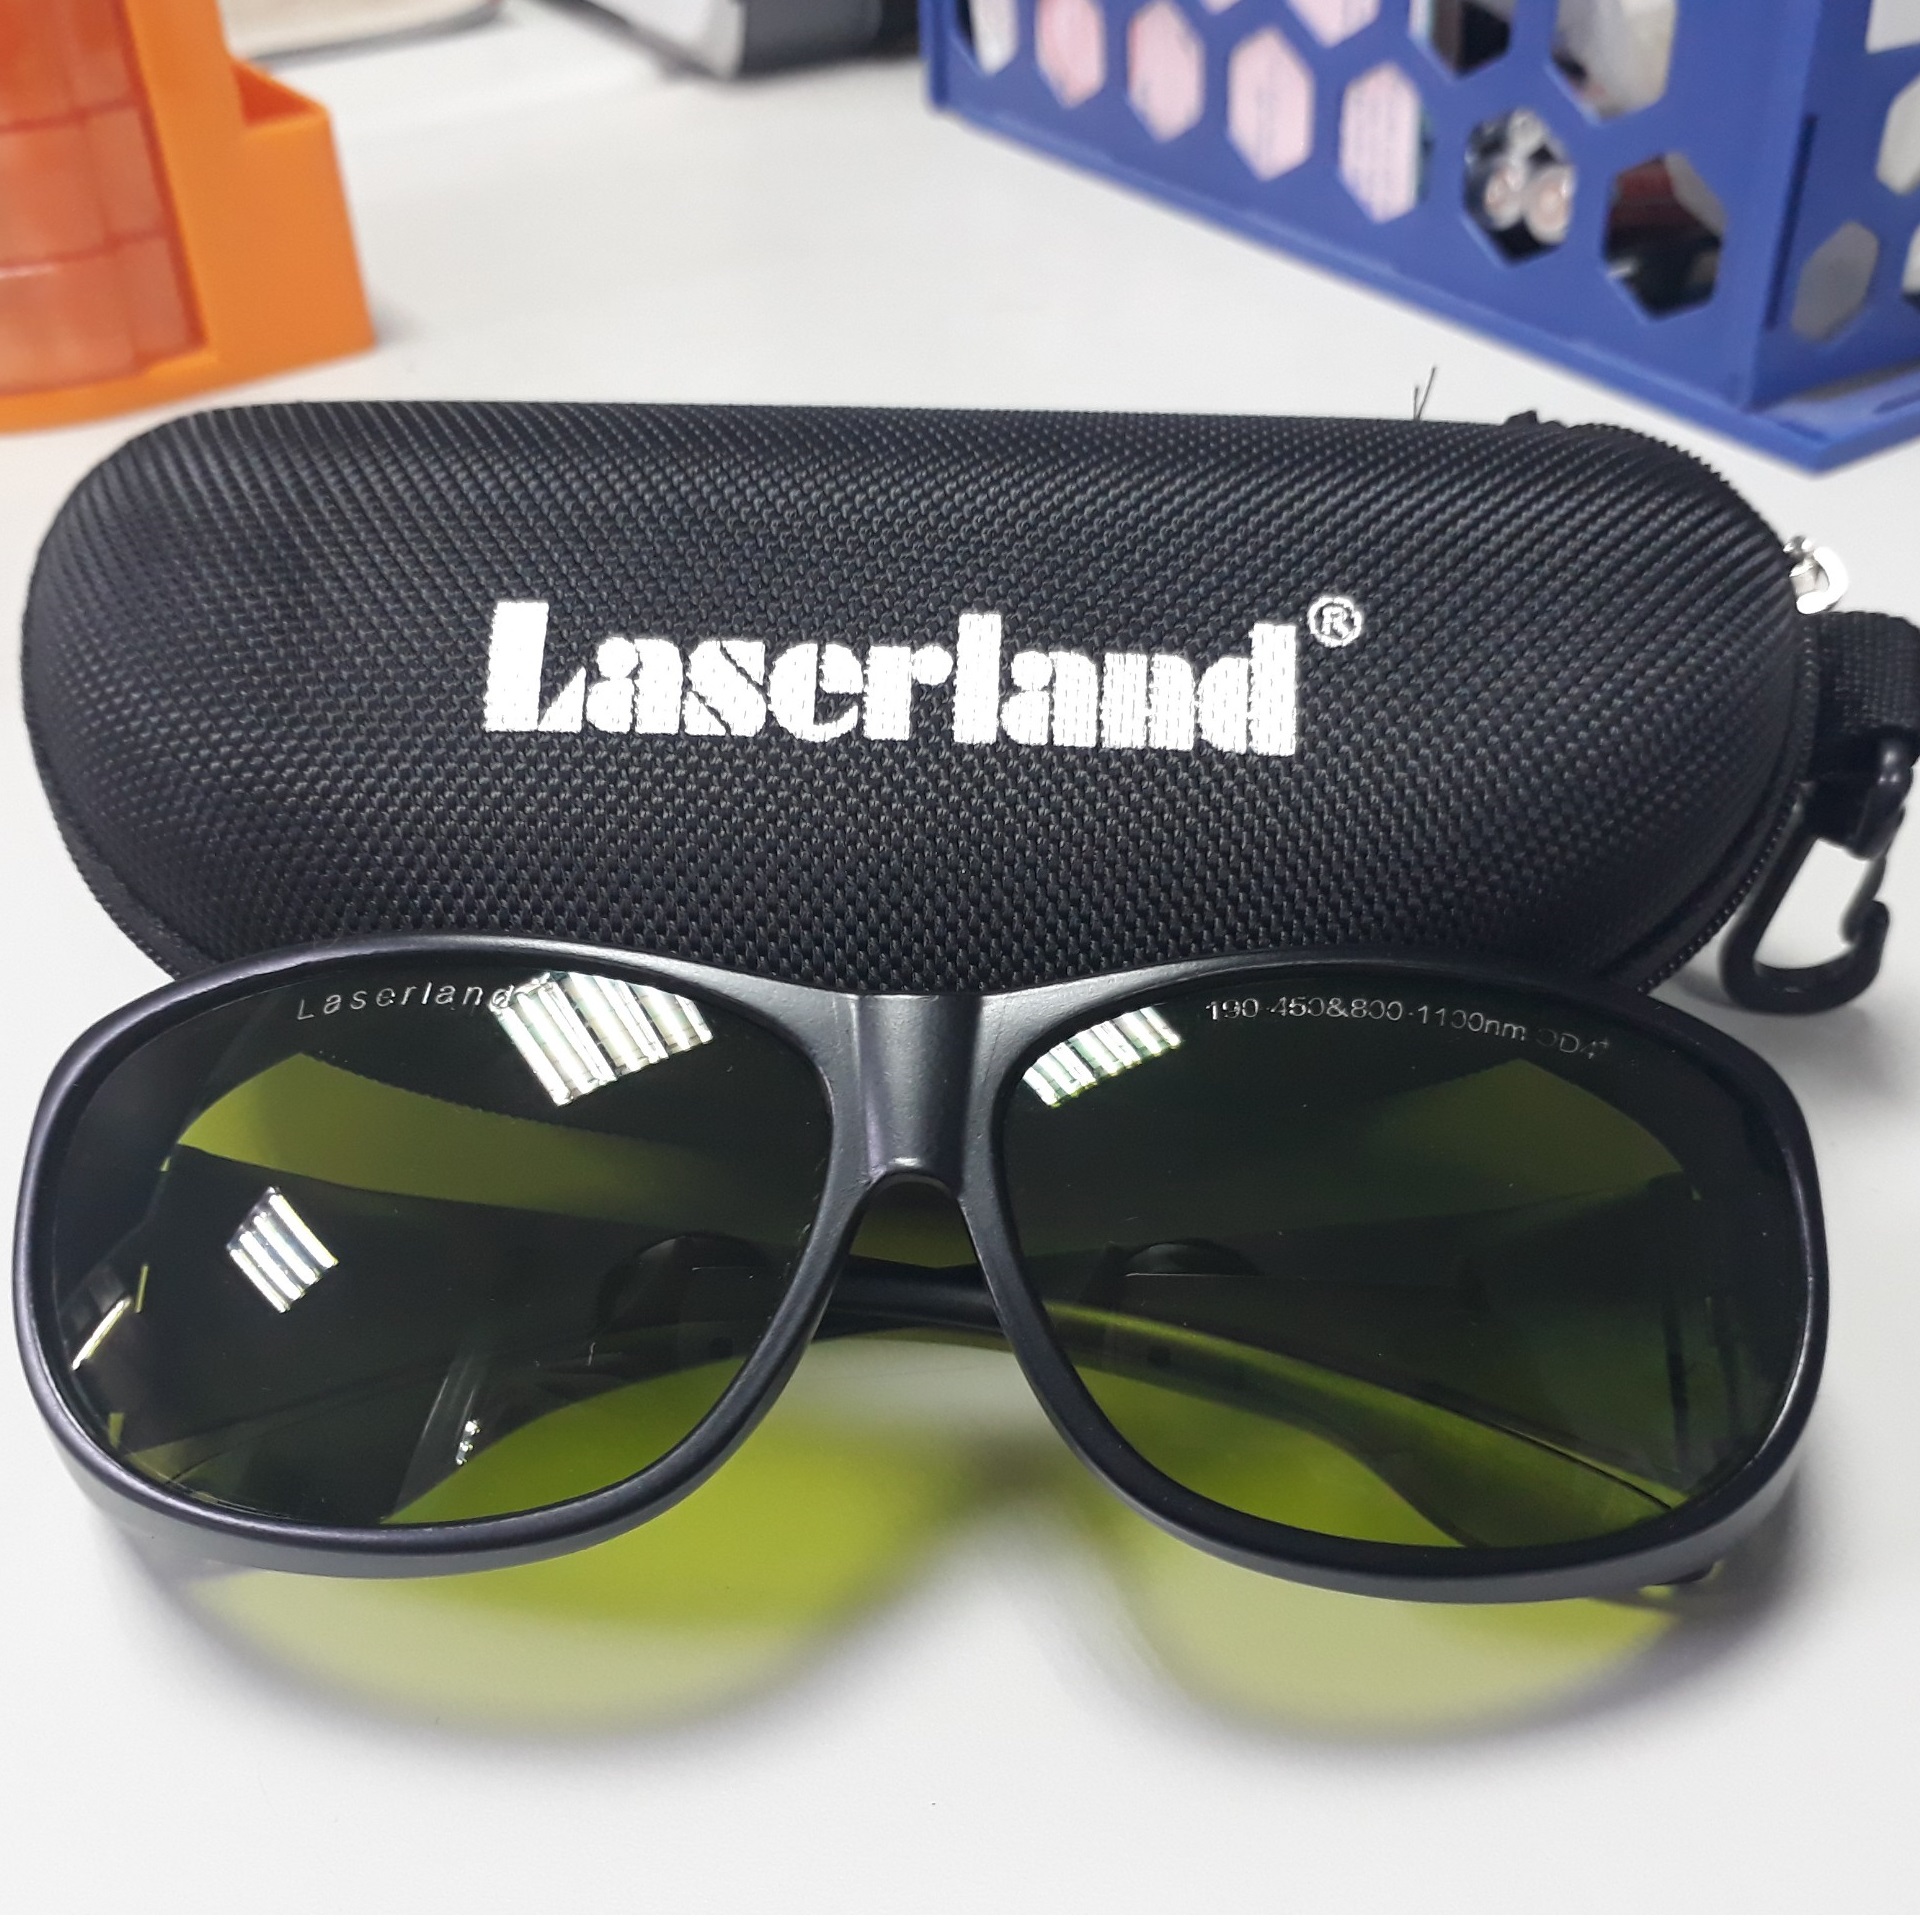 kính chống tia laser sk-3 laserland